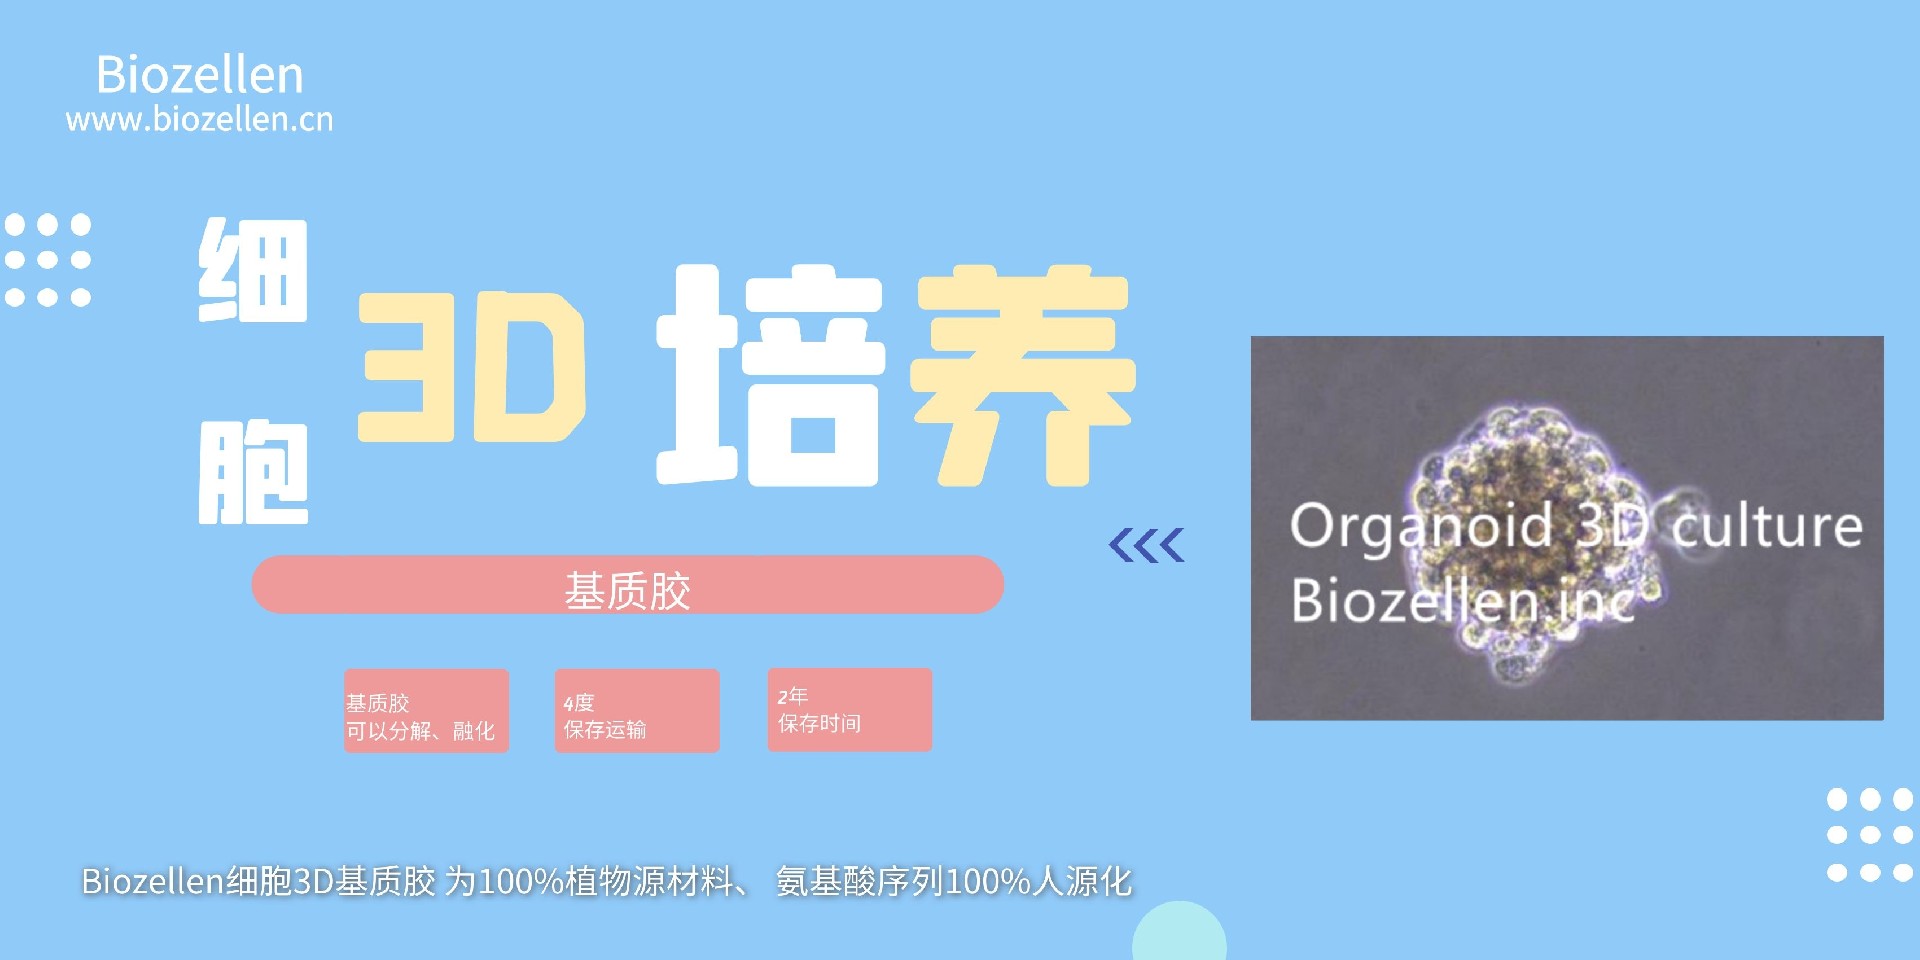 广州3D细胞外基质胶常见问题_杭州细胞外3D培养基质胶上的免疫试验_深圳市安培生物科技有限公司